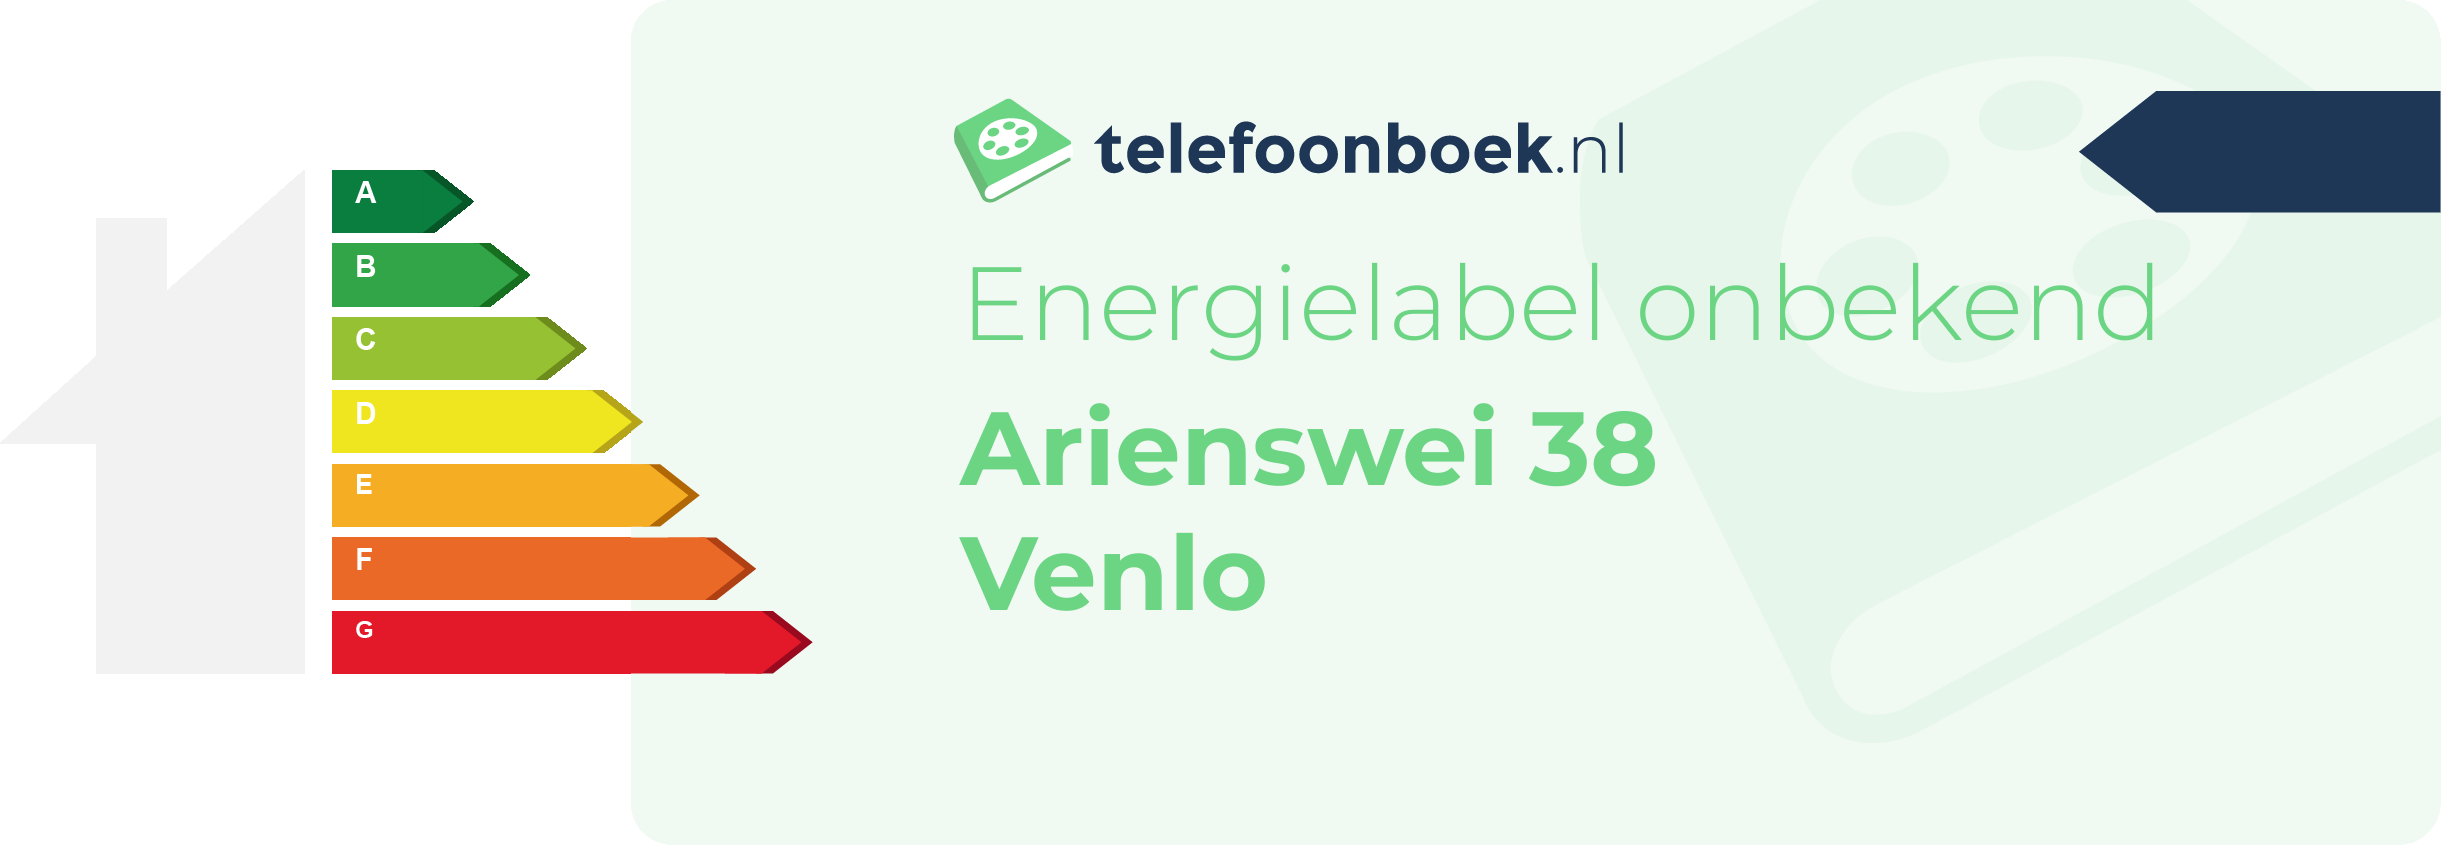 Energielabel Arienswei 38 Venlo